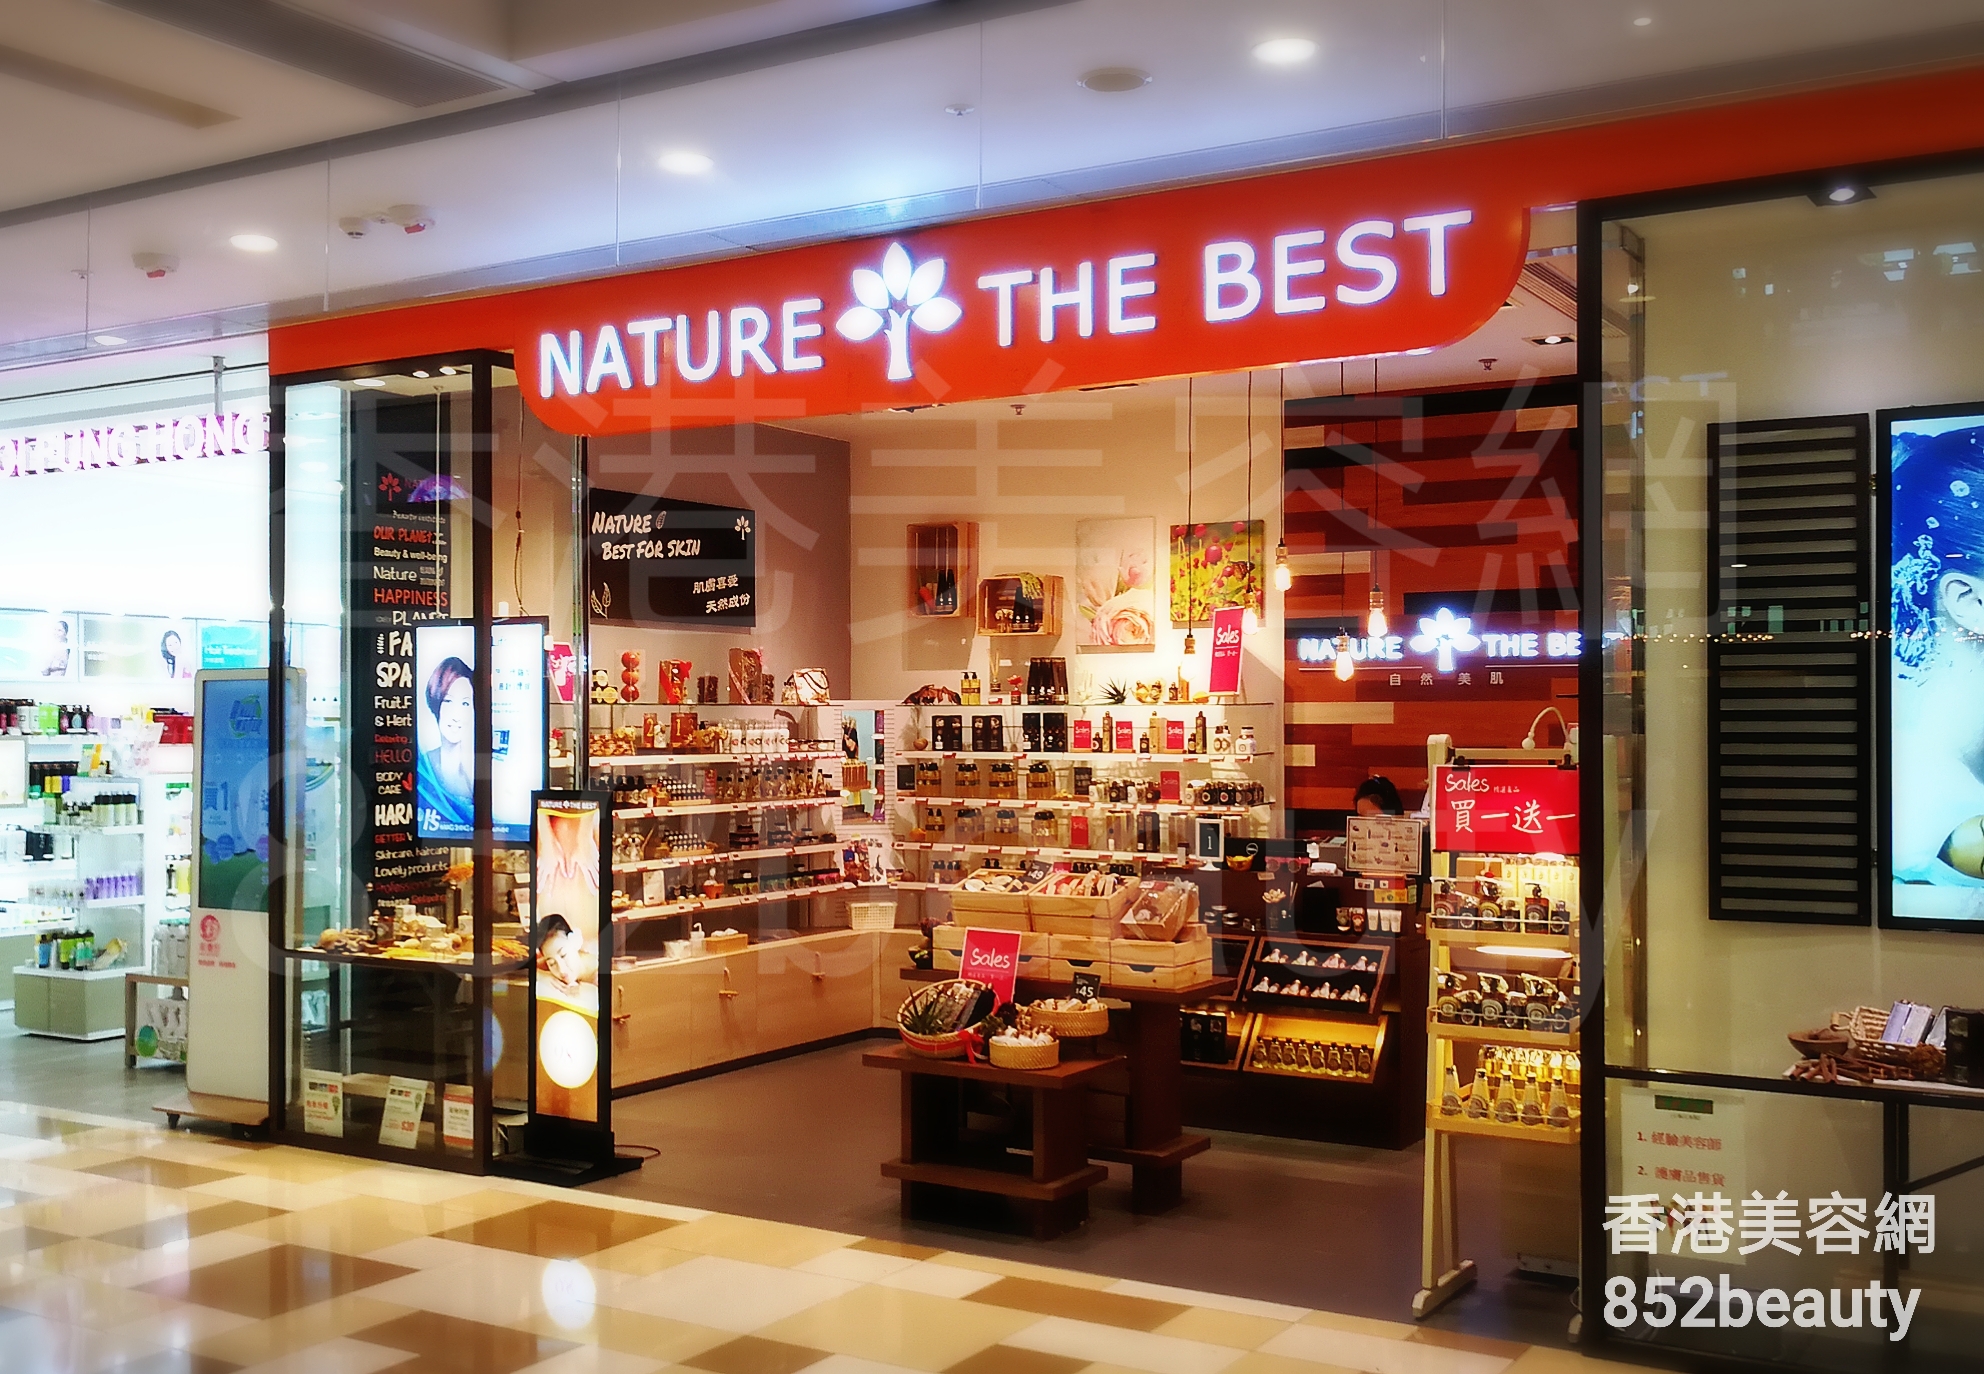 黃大仙美容院: NATURE THE BEST | 香港美容網Hong Kong Salon